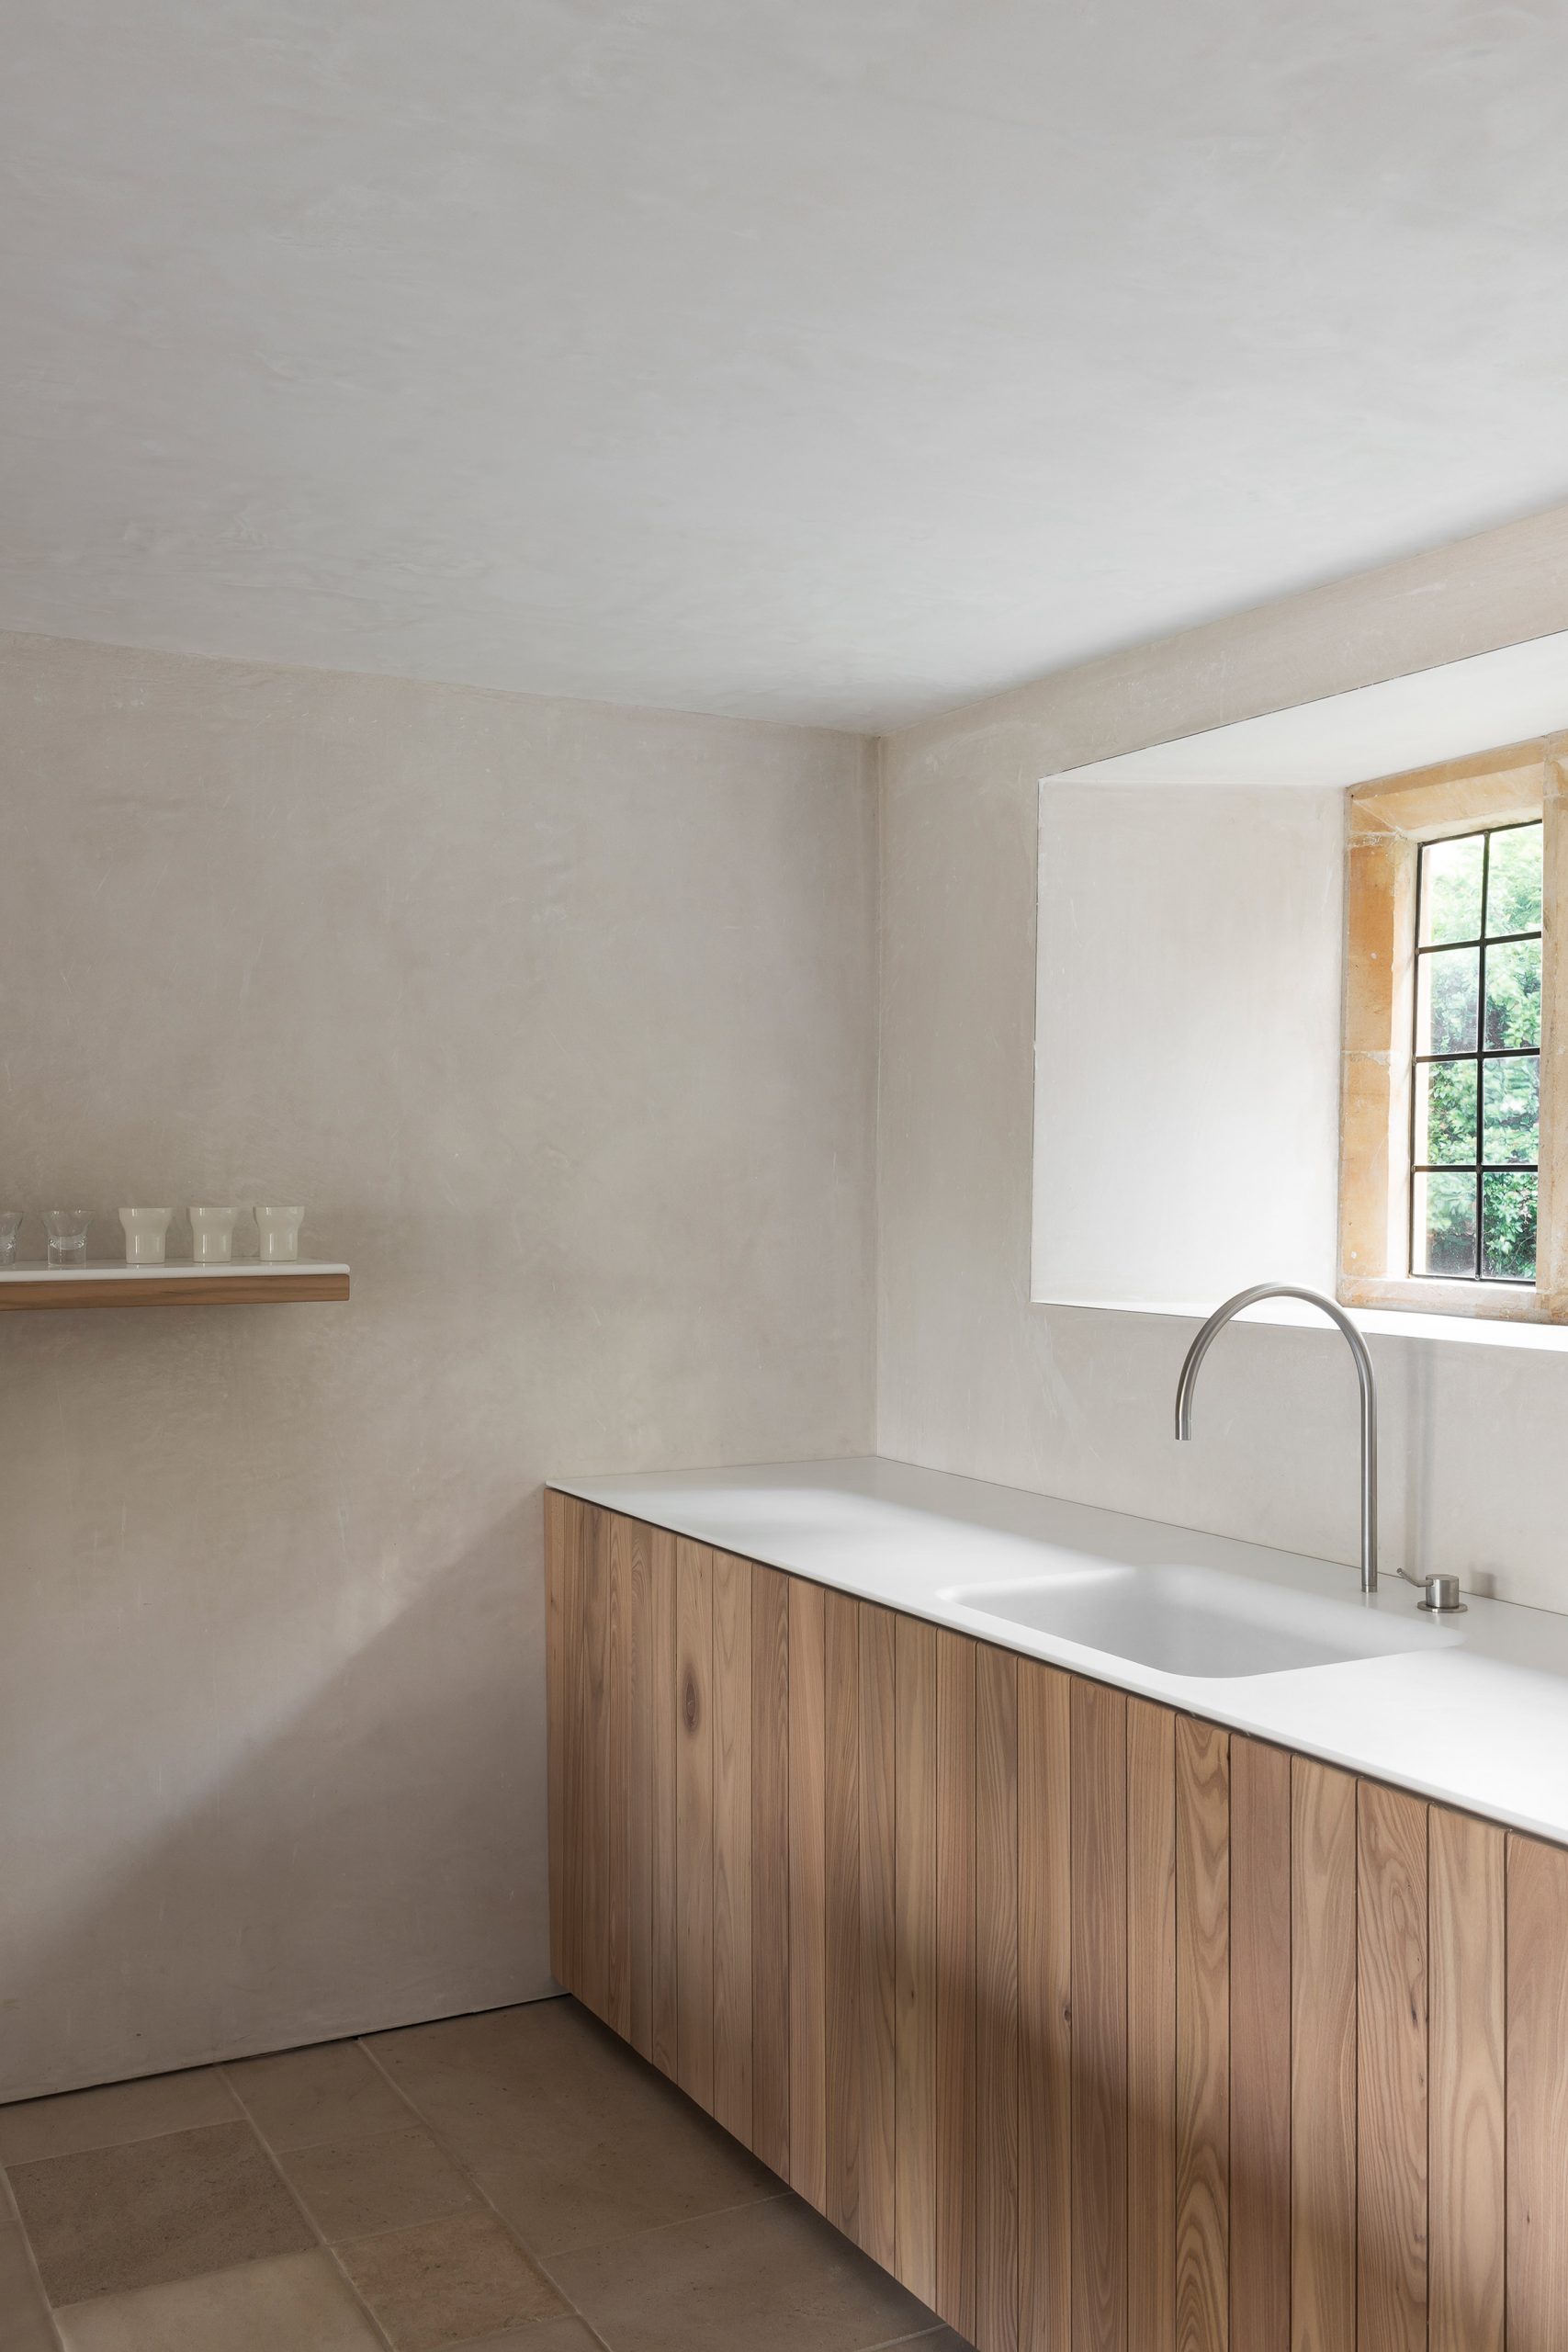 John Pawson's minimalist kitchen